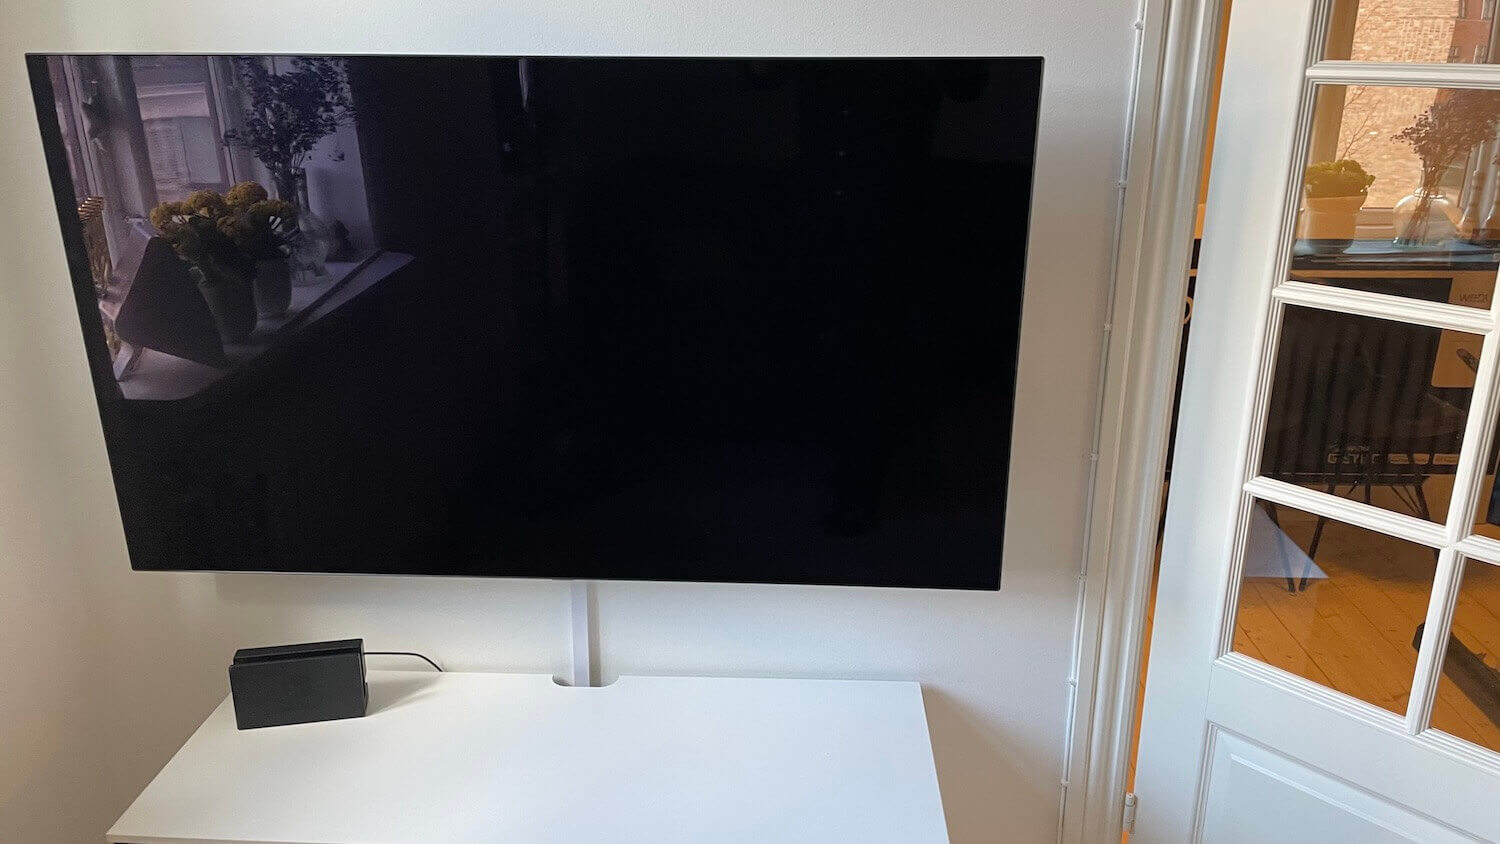 Installation af LG OLED TV